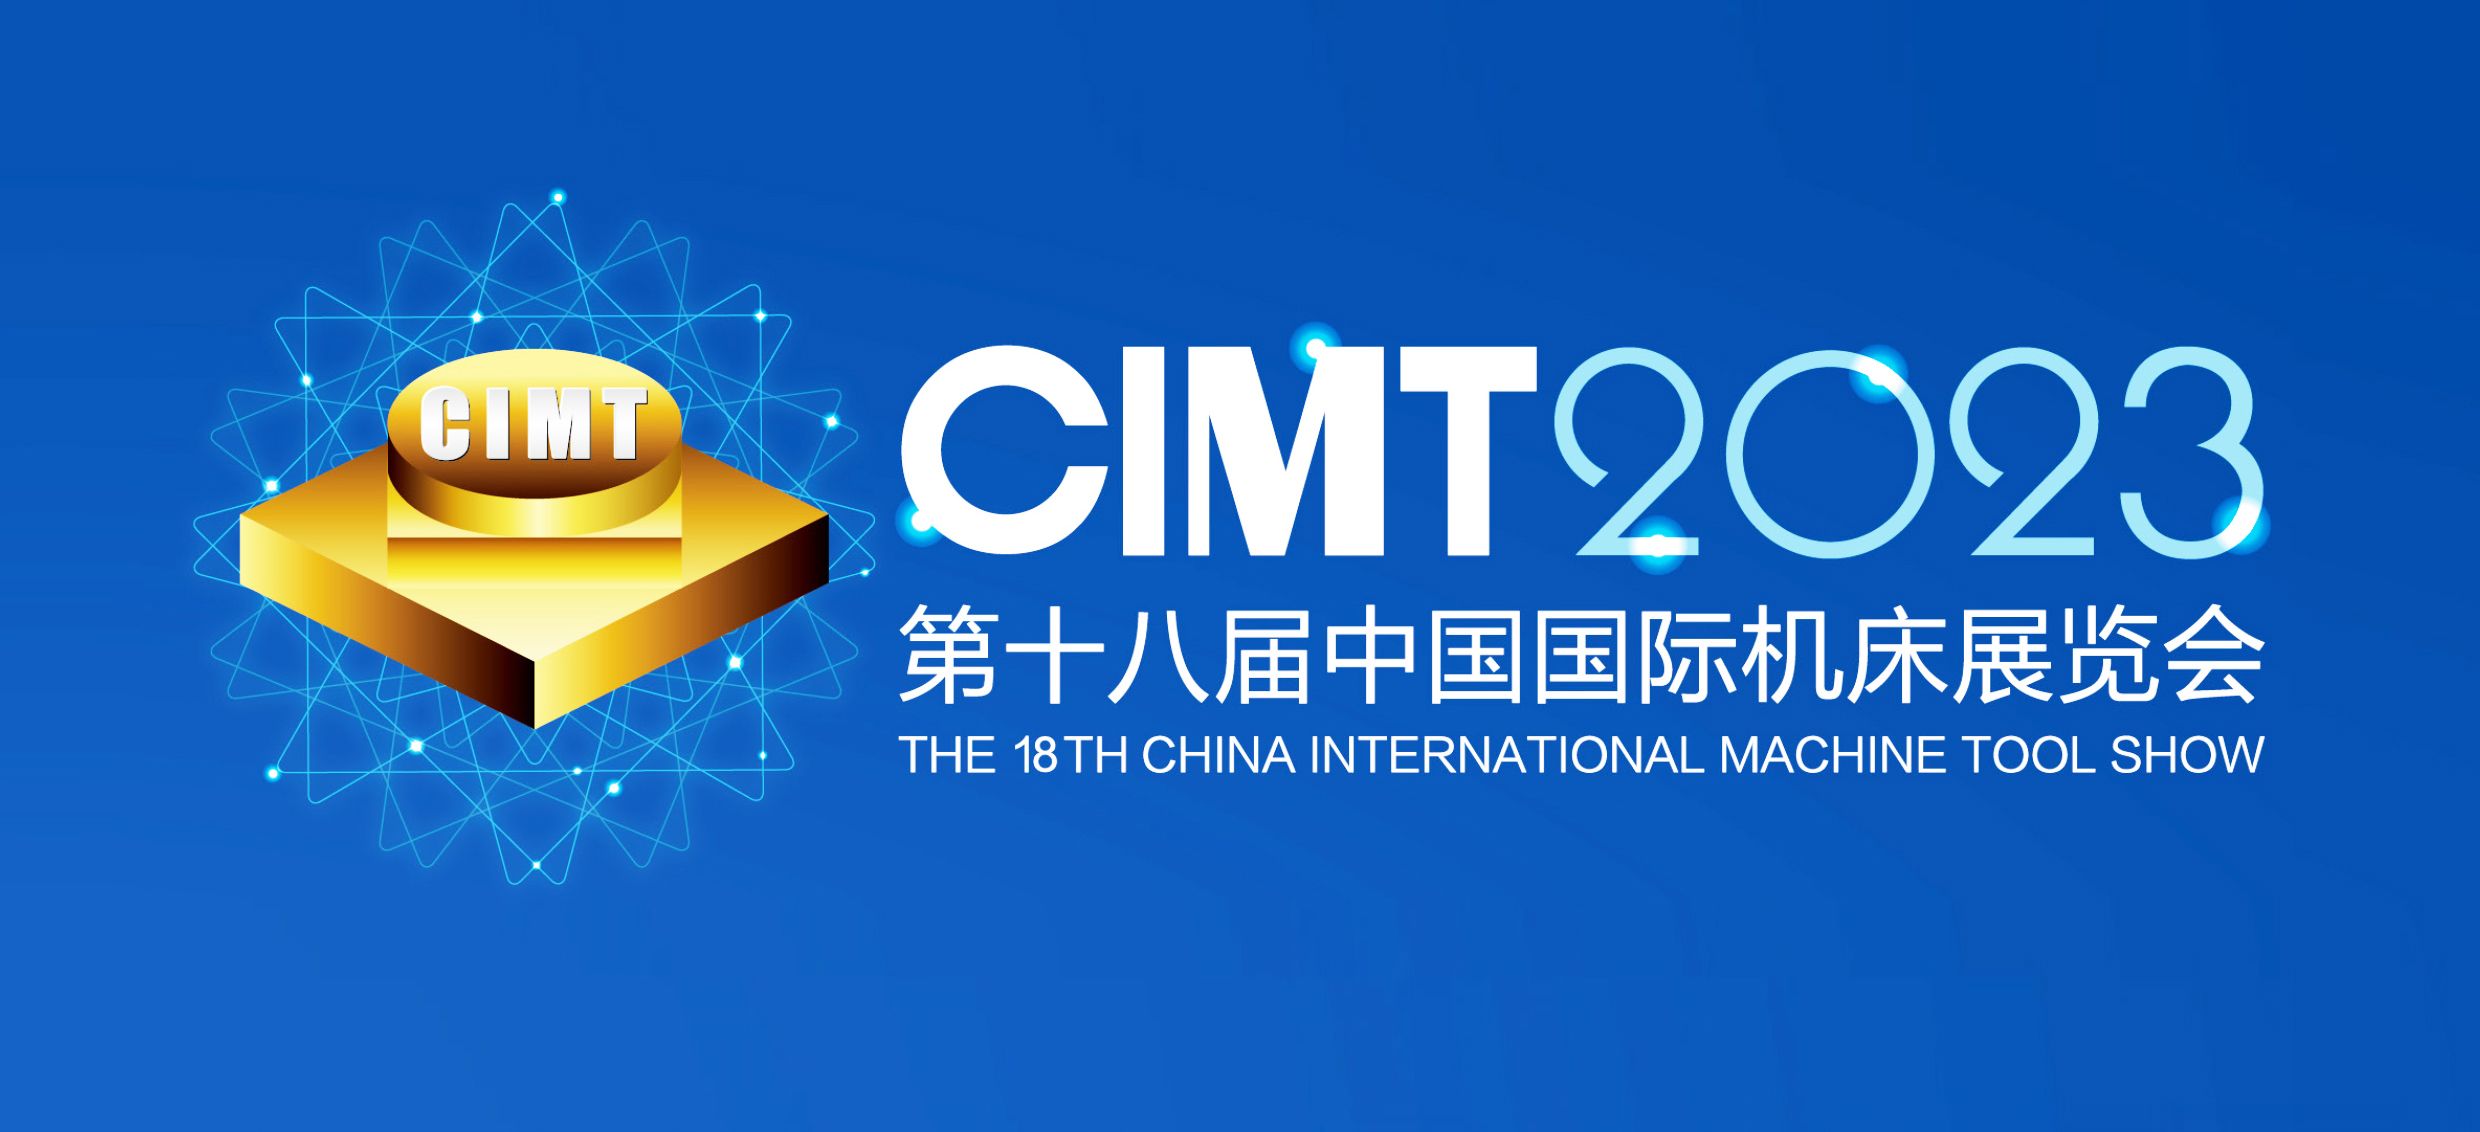 展會邀請|4月10-15第十八屆中國國際機床展覽會通錦精密與您相約北京！